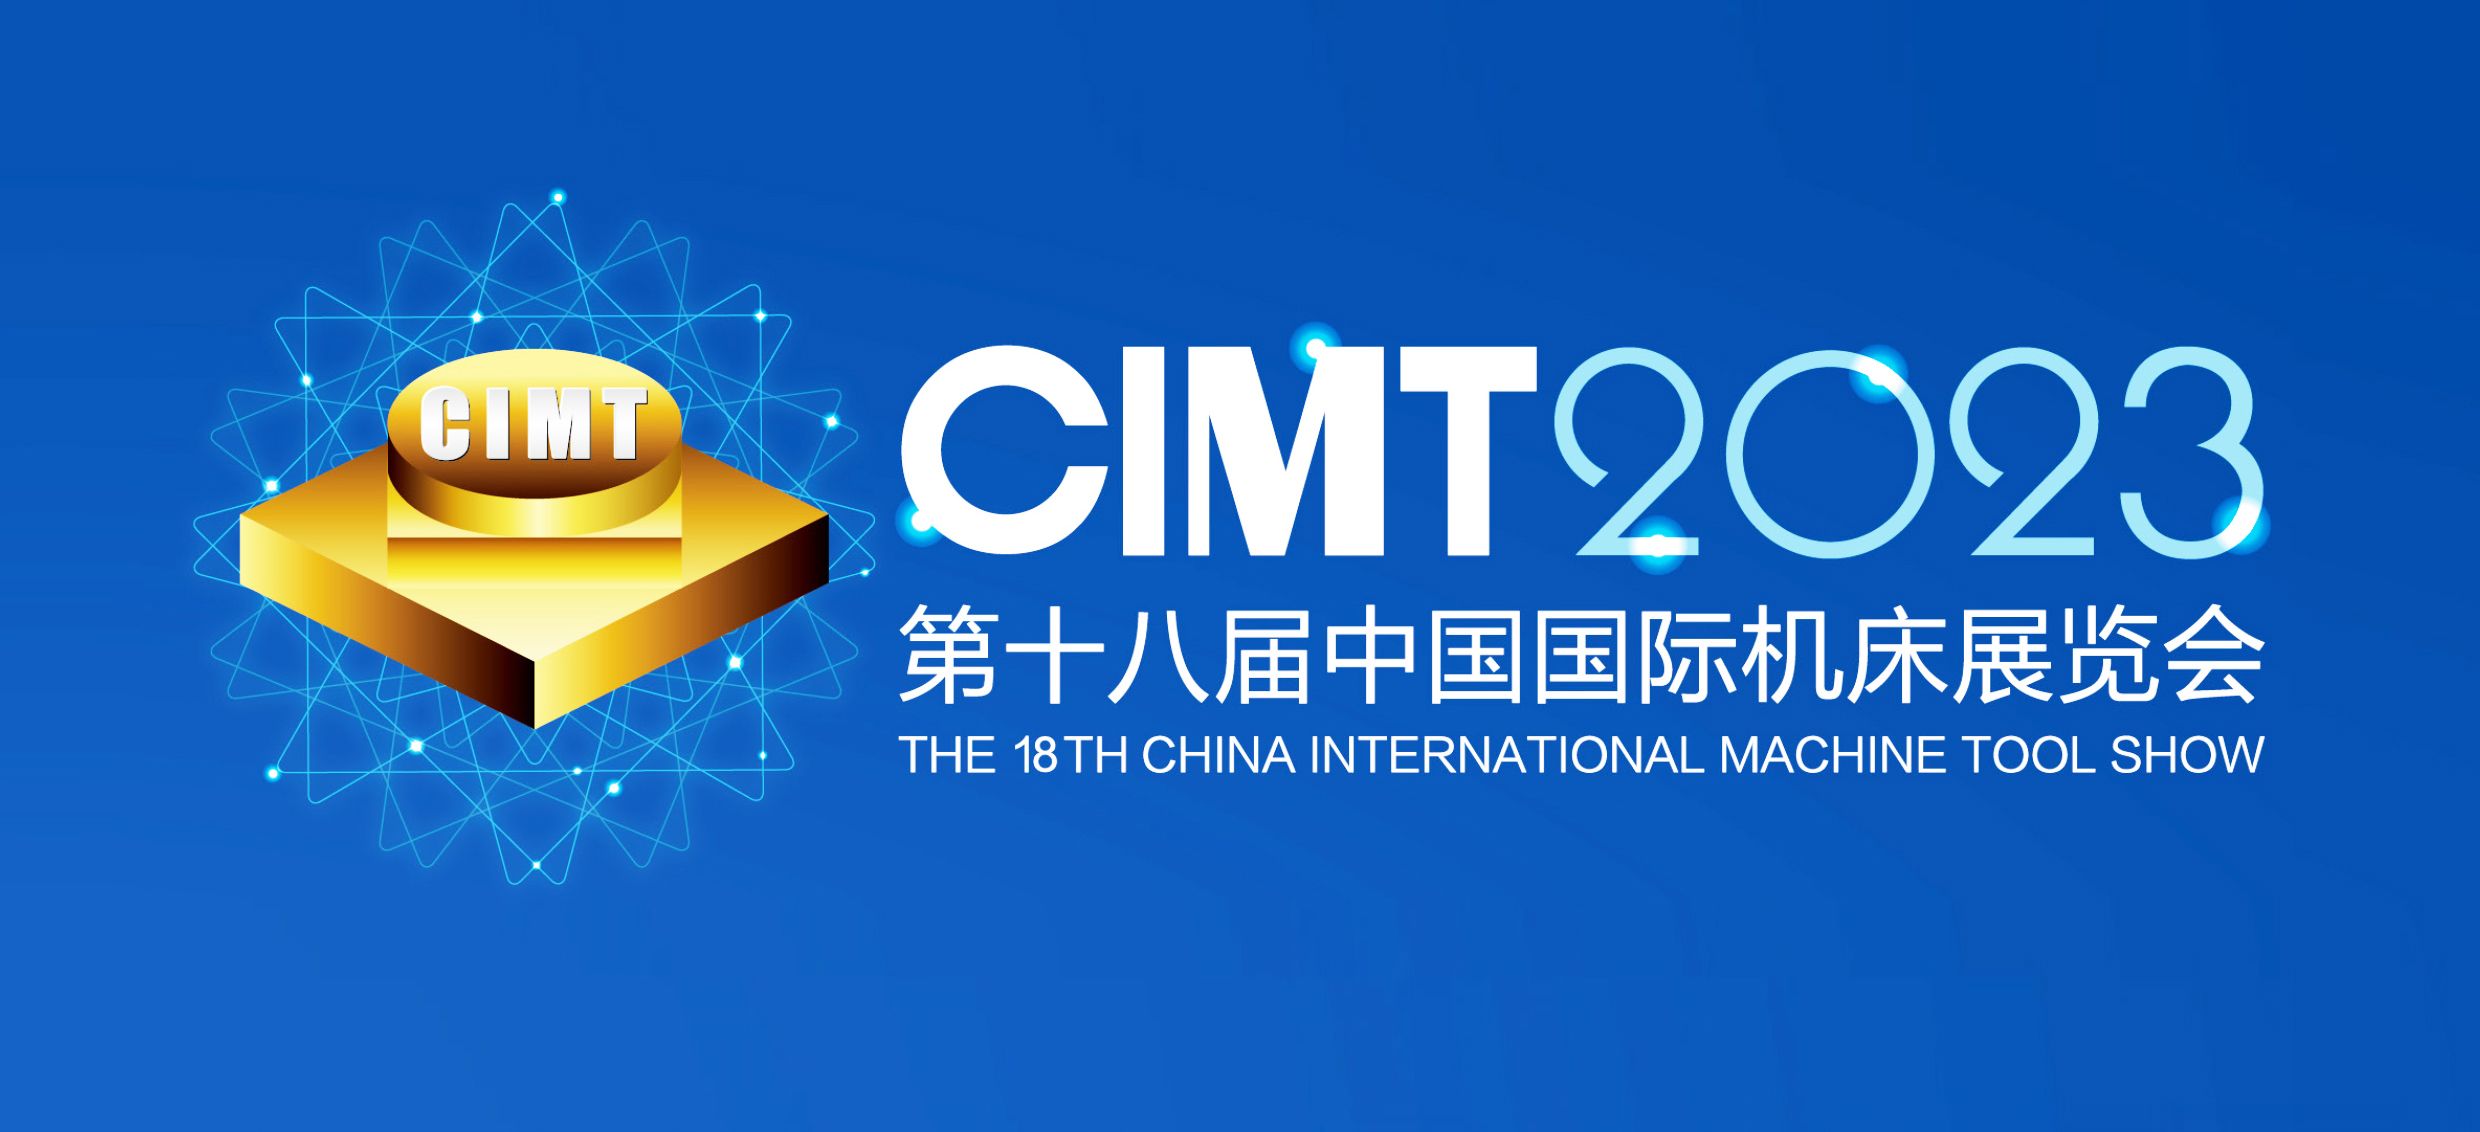 展會邀請|4月10-15第十八屆中國國際機床展覽會通錦精密與您相約北京！